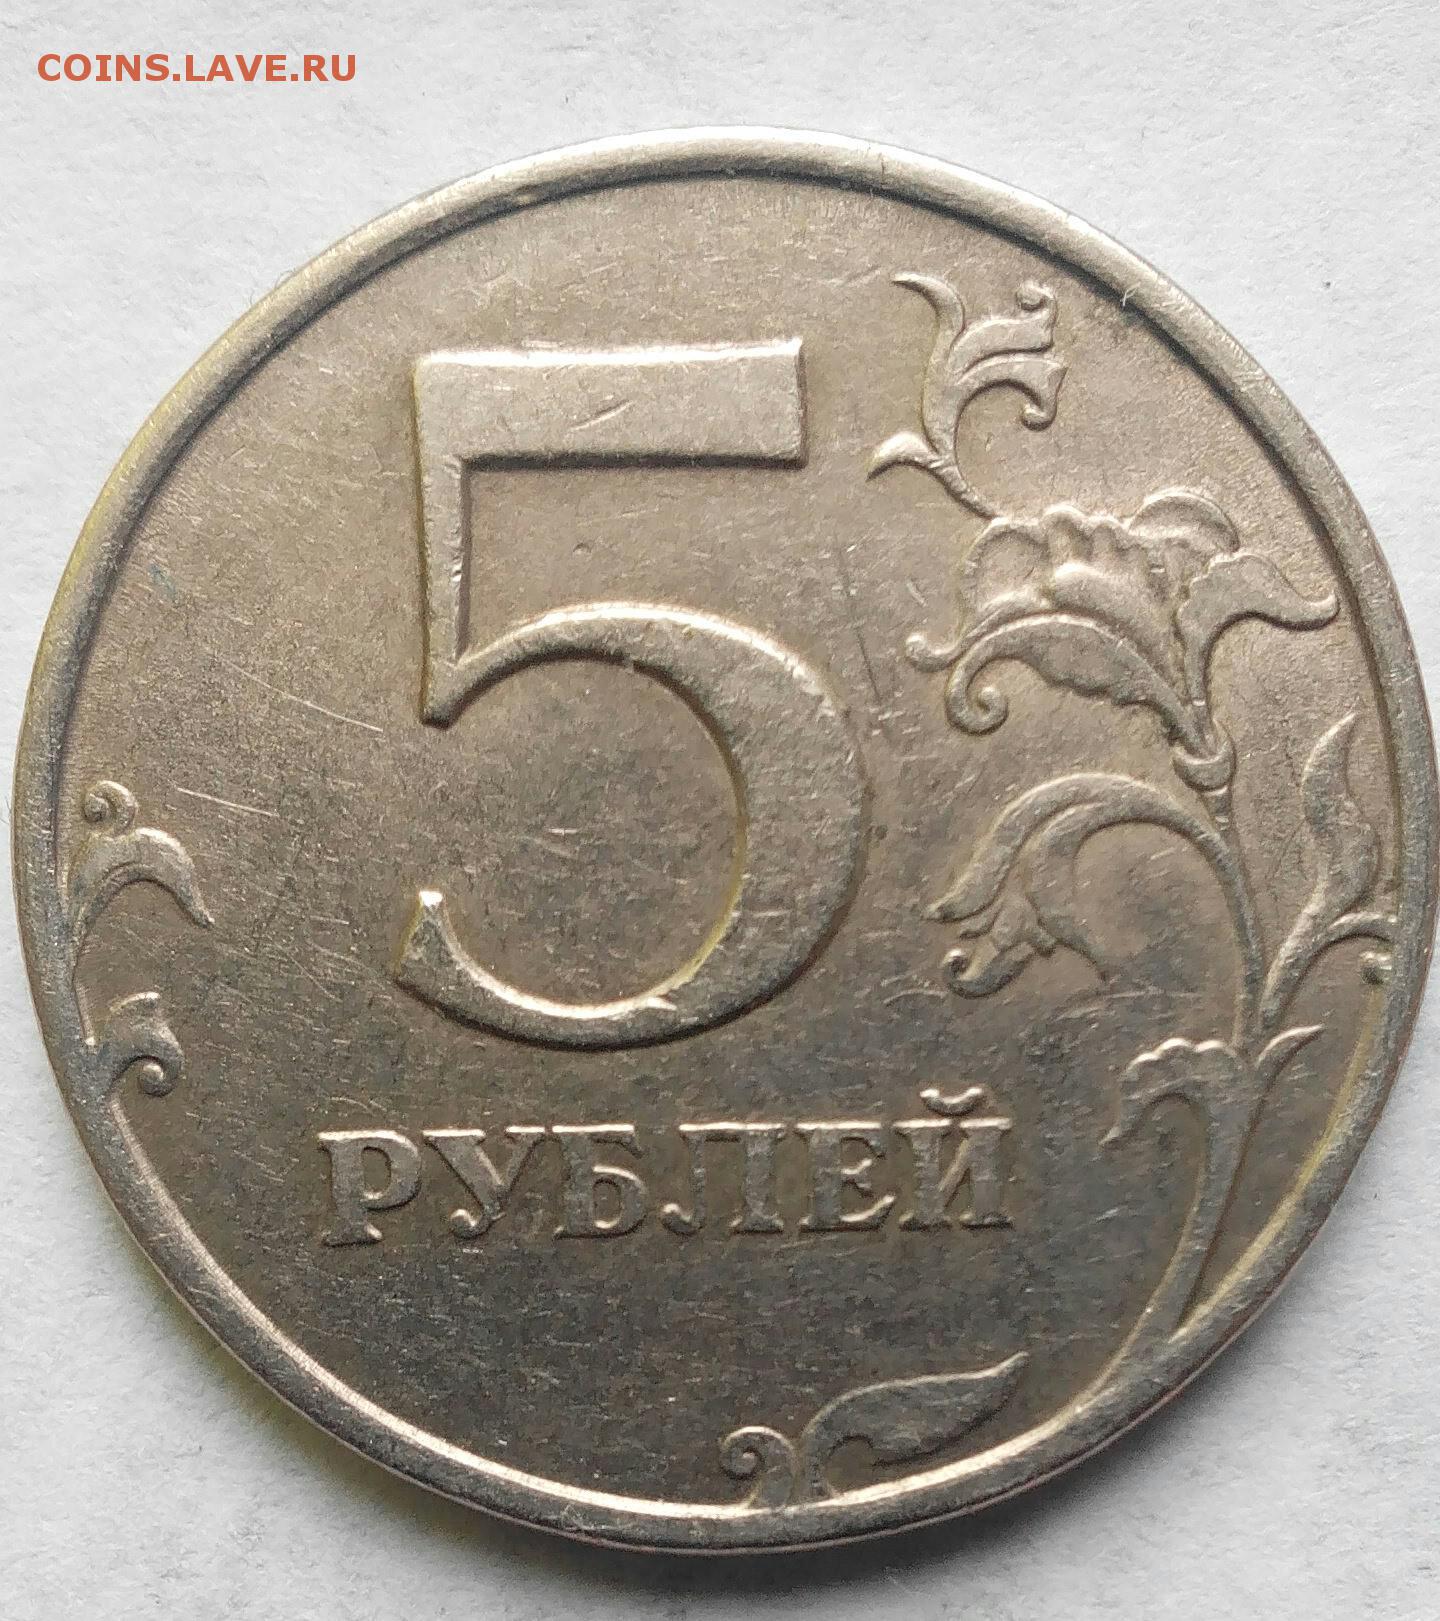 5 рублей 13 года. 5 Рублей 1998 СПМД редкая.